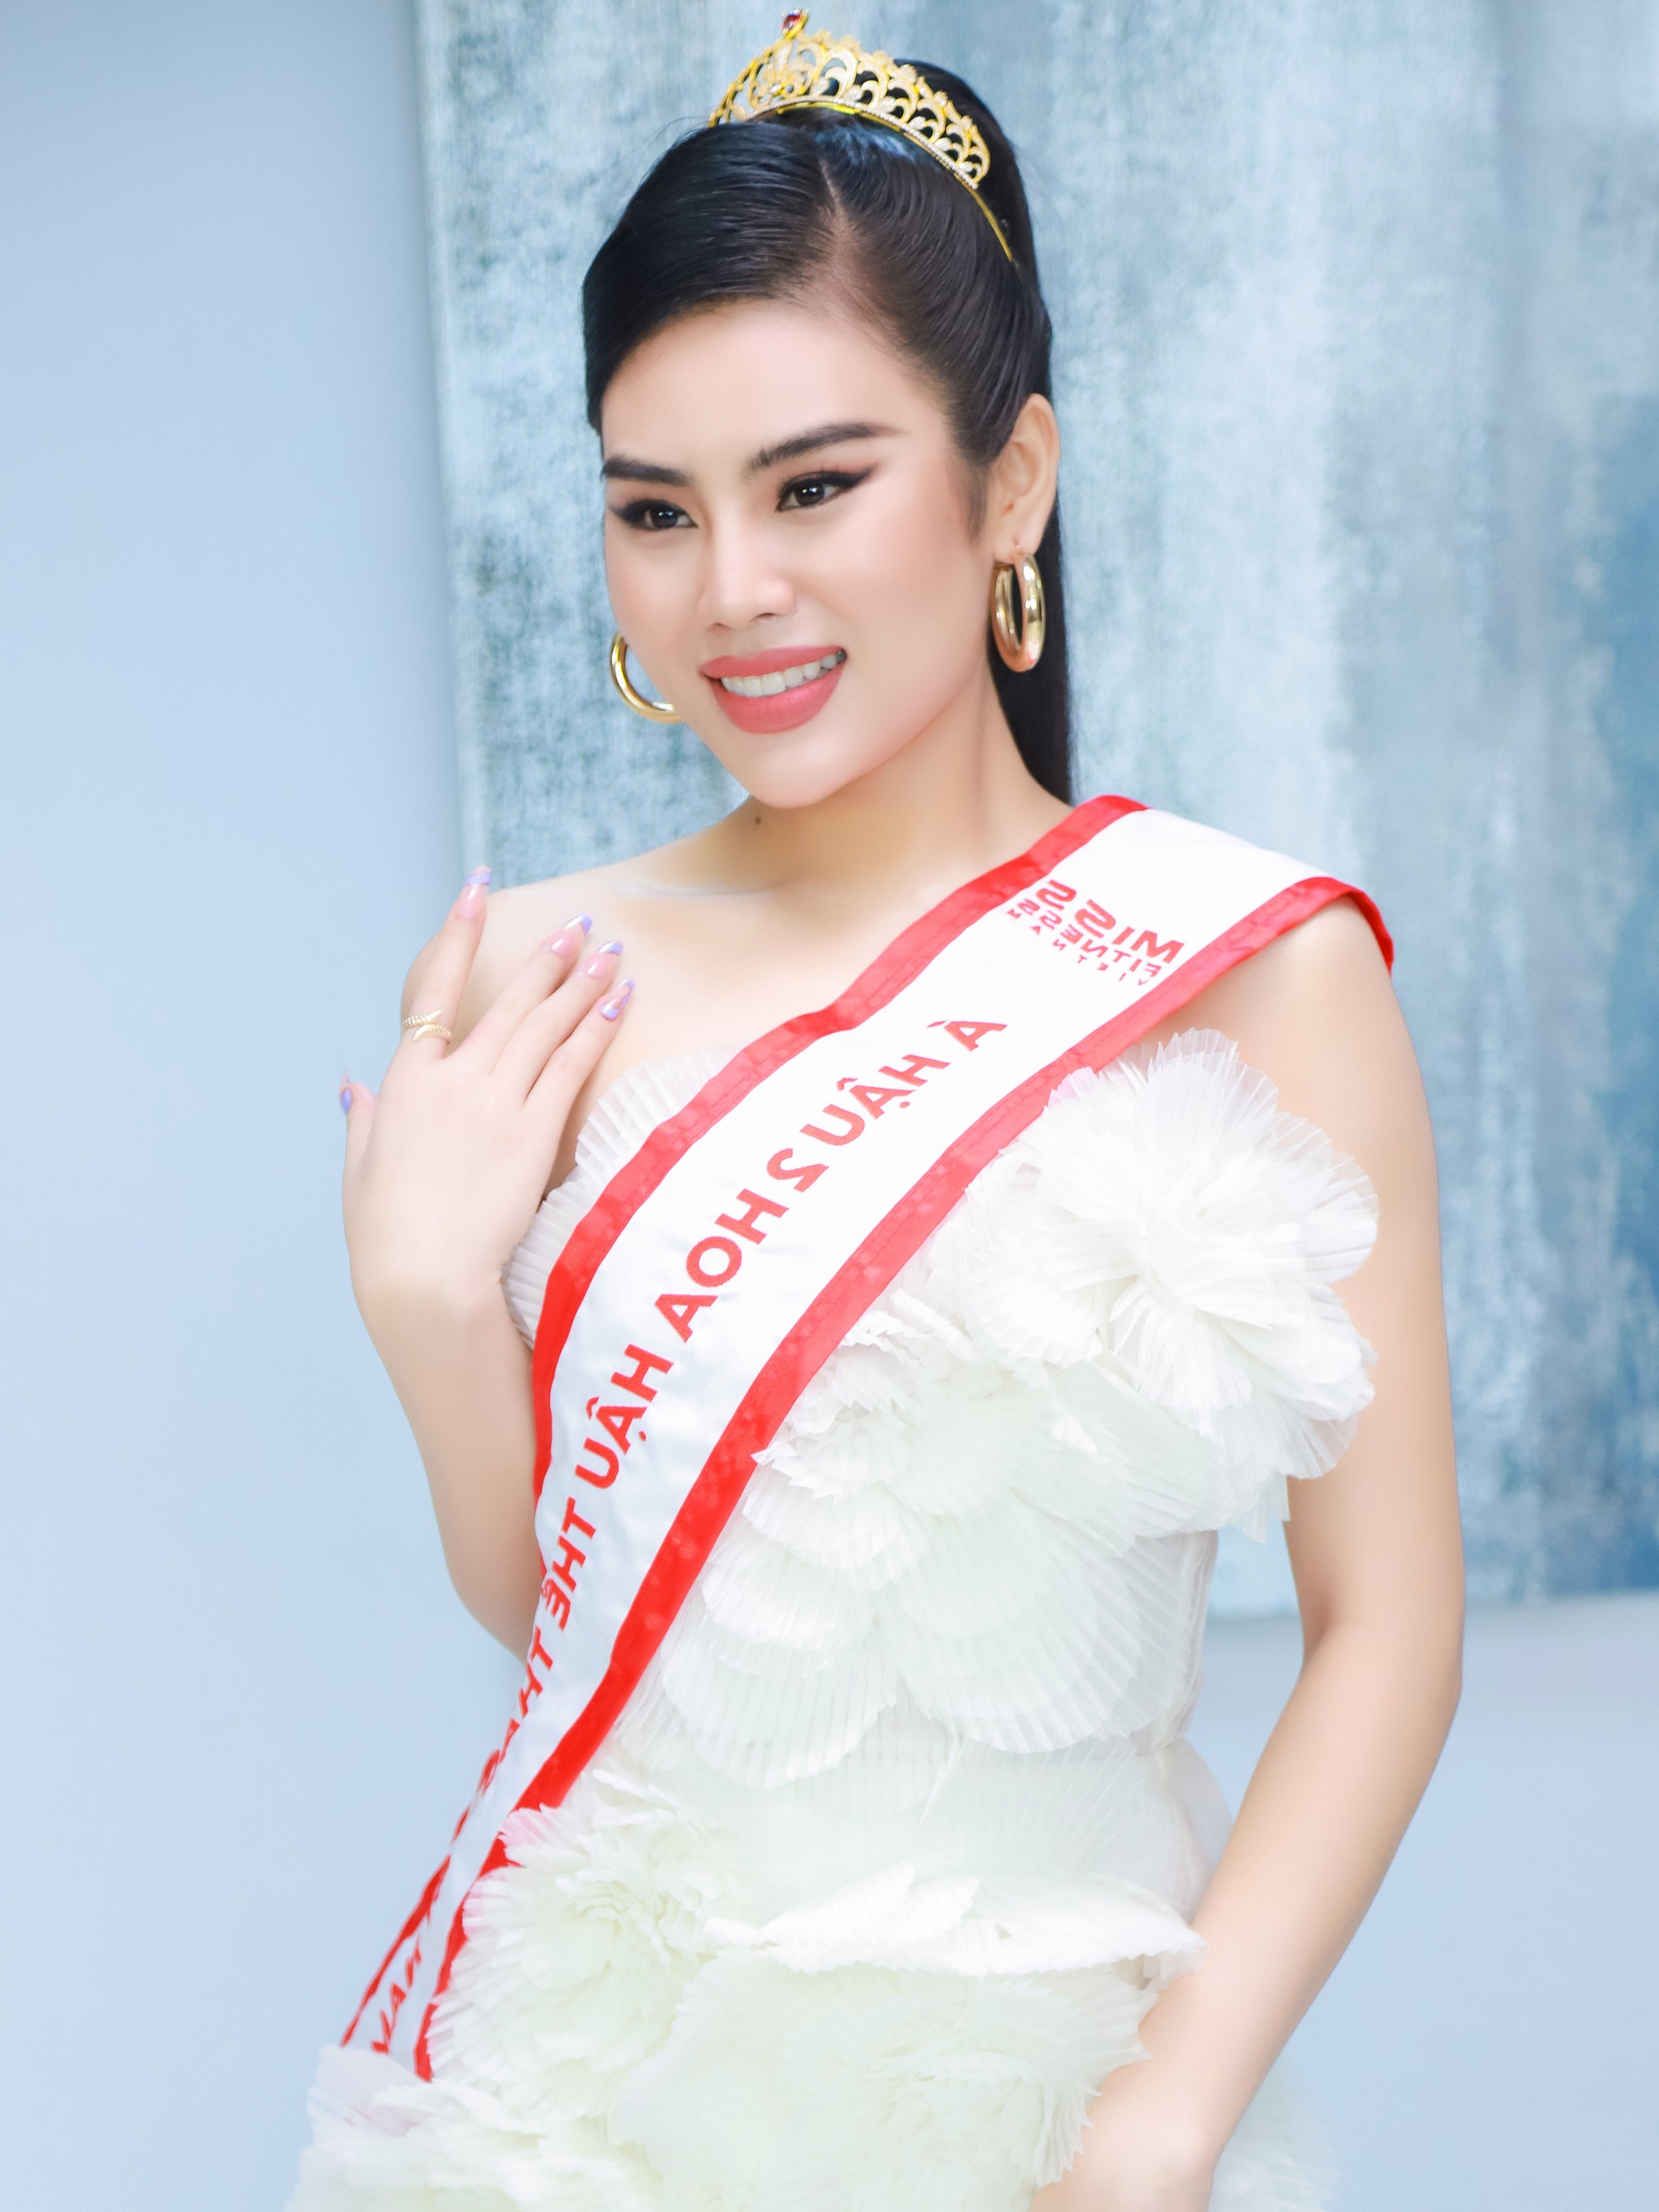 Giao lưu cùng Top 3 Hoa hậu Thể thao Việt Nam: Một lần nói rõ những lùm xùm hậu đăng quang, nhận xét thẳng thắn về Lê Bống  - Ảnh 5.